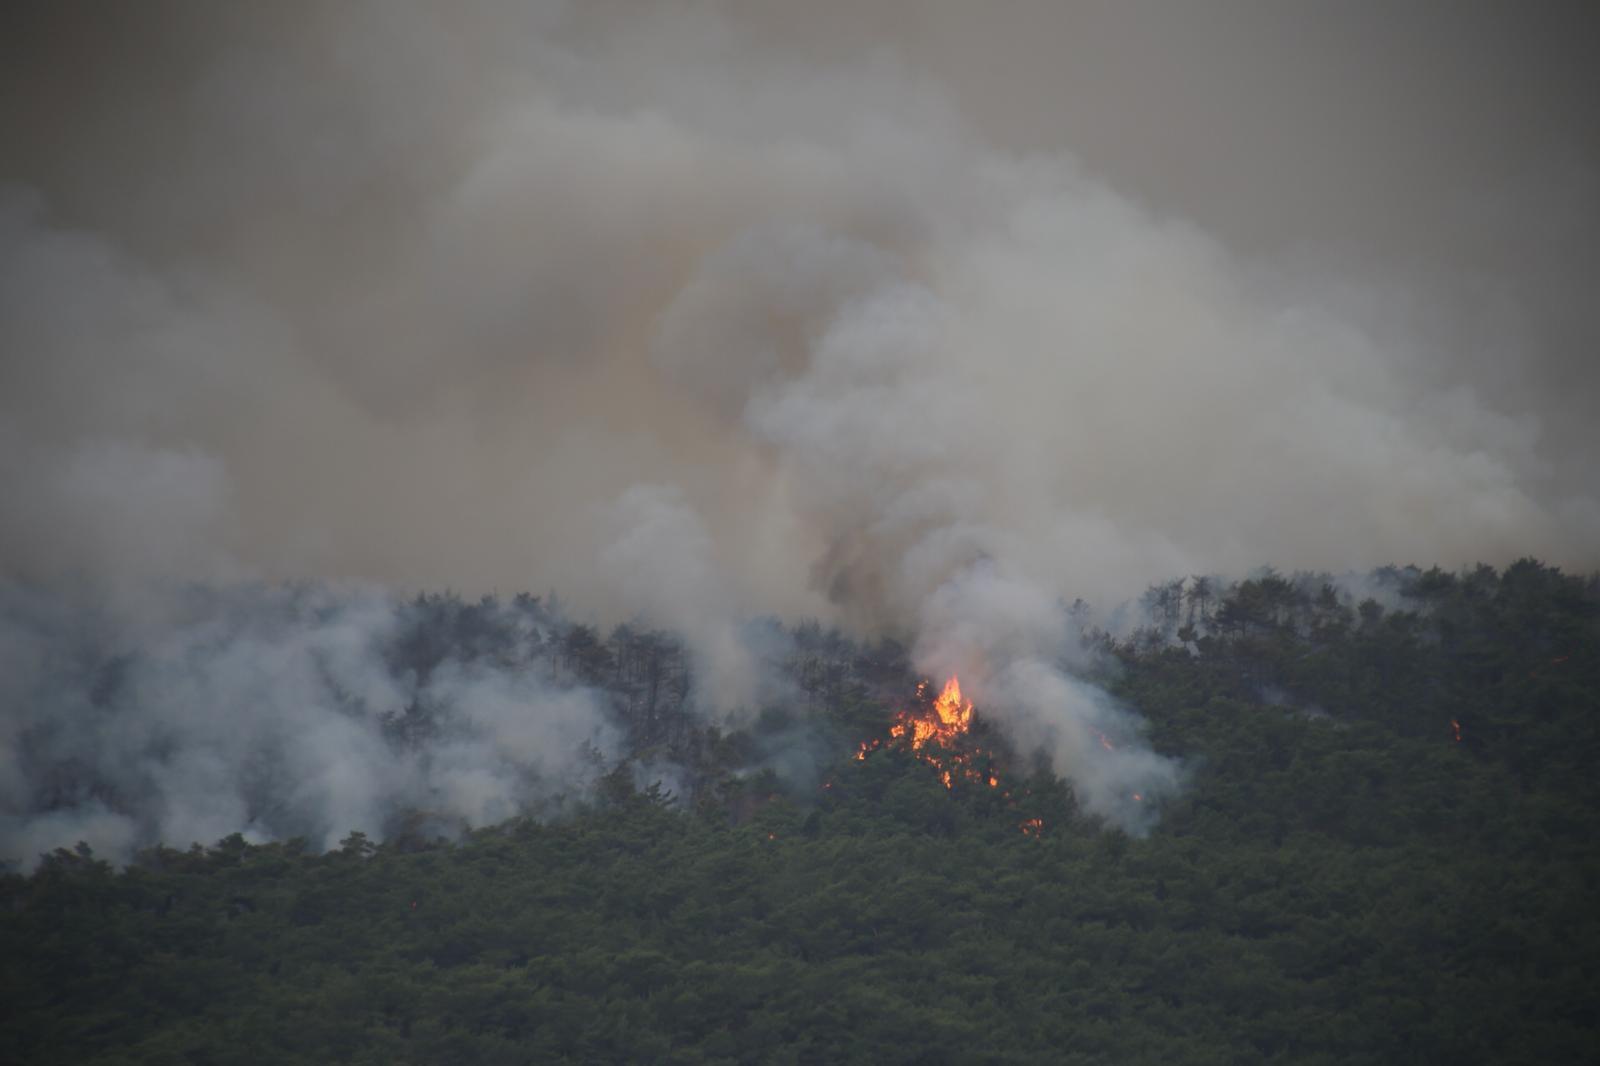 Son dakika... Hataydaki orman yangını yerleşim bölgesini tehdit ediyor